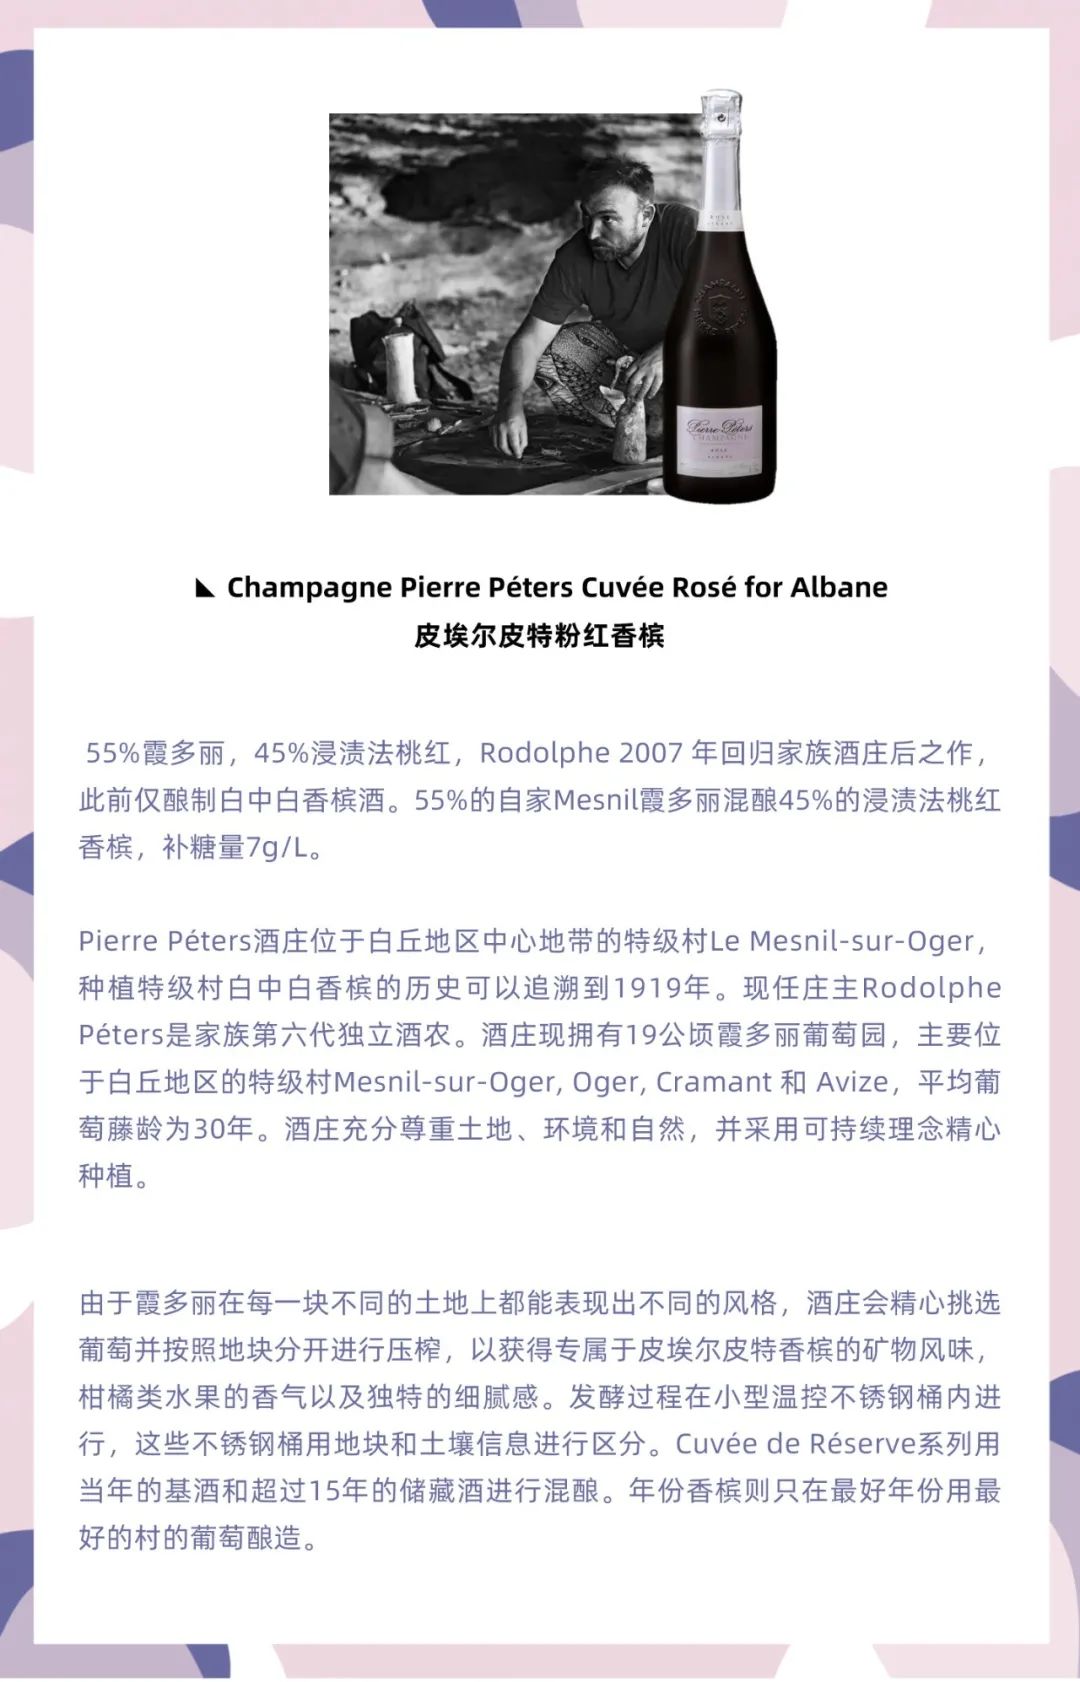 12.19 上海 | 槟客x晟永兴 桃红香槟全鸭晚宴，升级版等你来烤